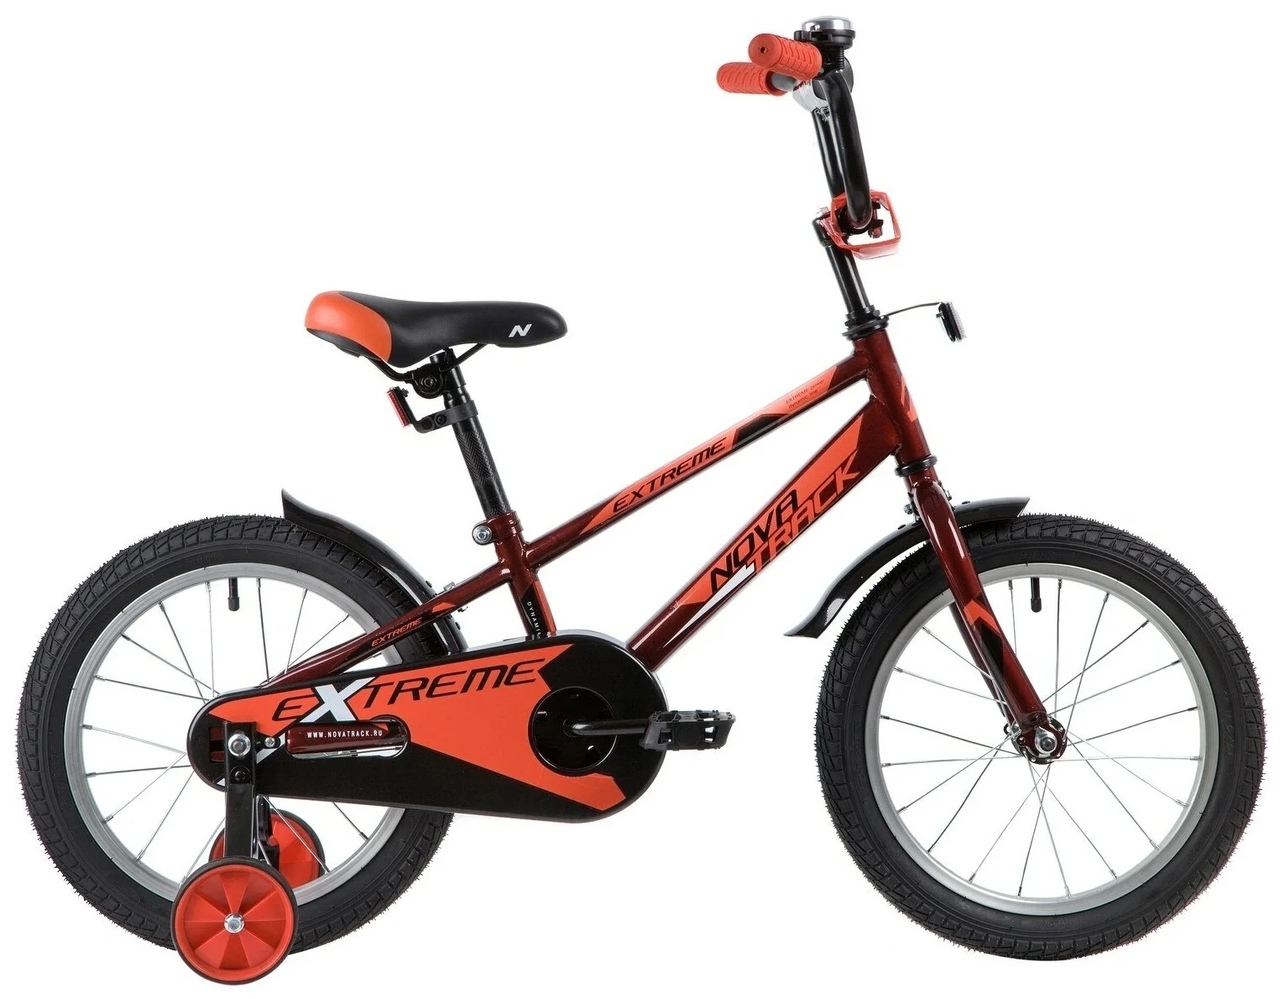  Отзывы о Детском велосипеде Novatrack детский велосипед Novatrack Extreme 16 2019 2019